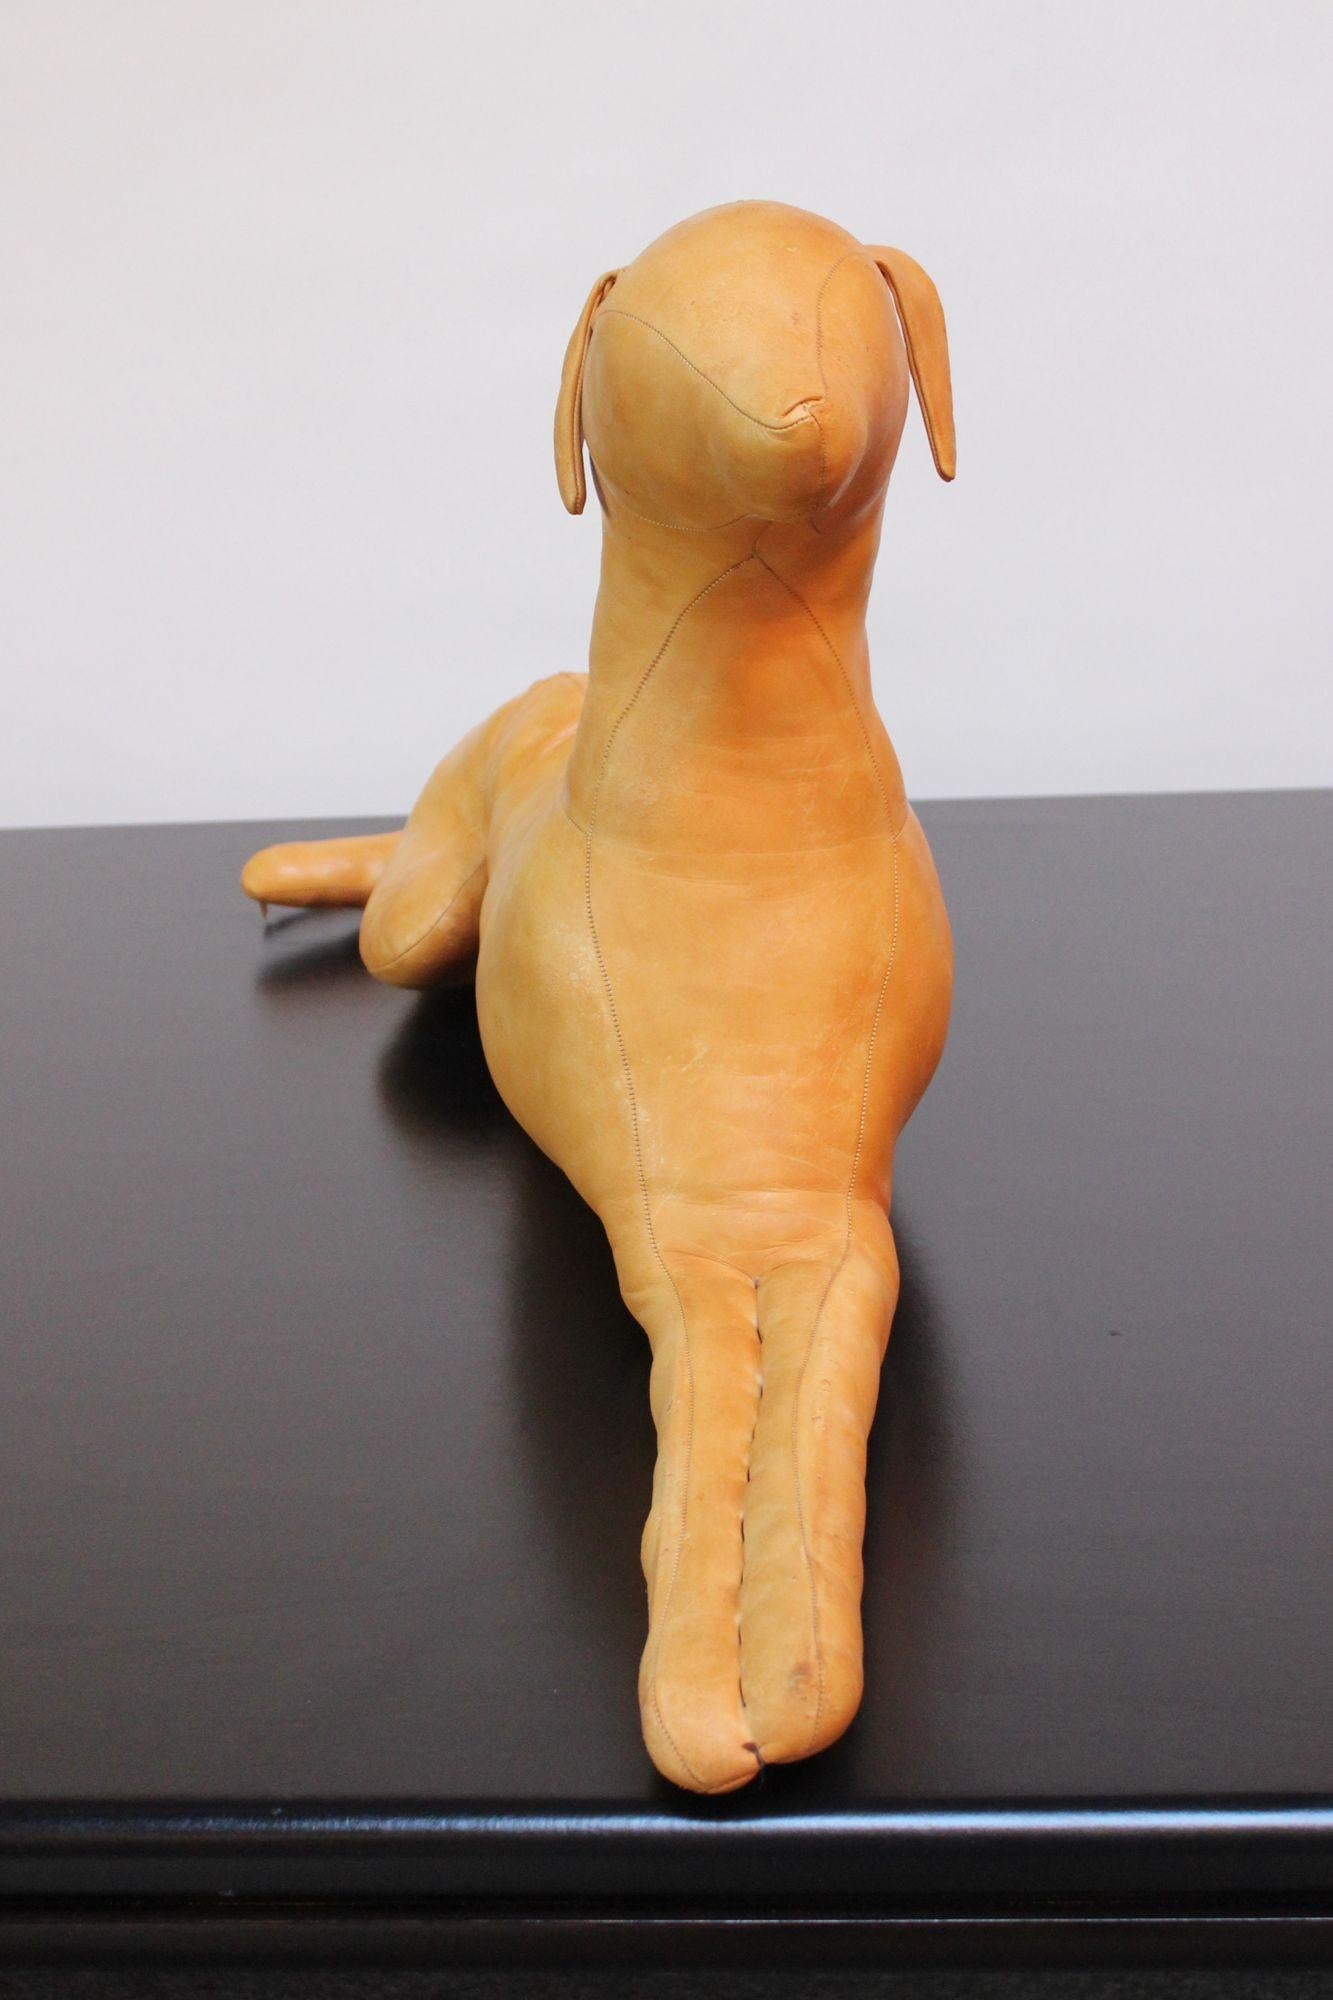 Primitive Vintage Hand-Stitched Leather Dog Sculpture For Sale